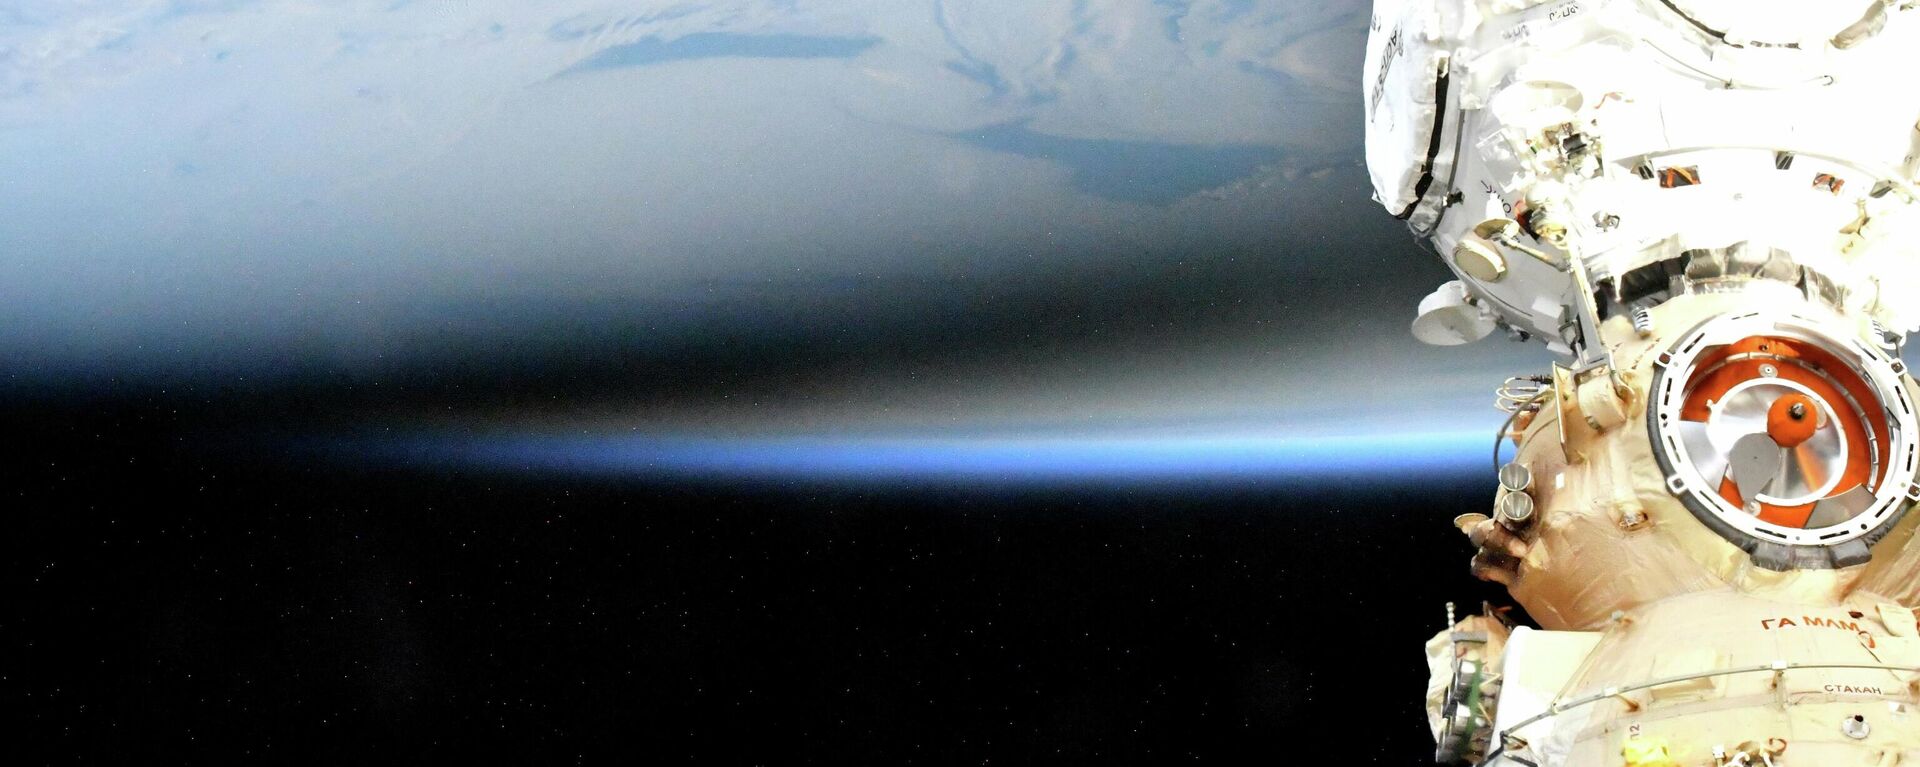 La sombra que la luna proyectó sobre la Tierra durante el eclipse solar del 4 de diciembre de 2021 - Sputnik Mundo, 1920, 05.12.2021